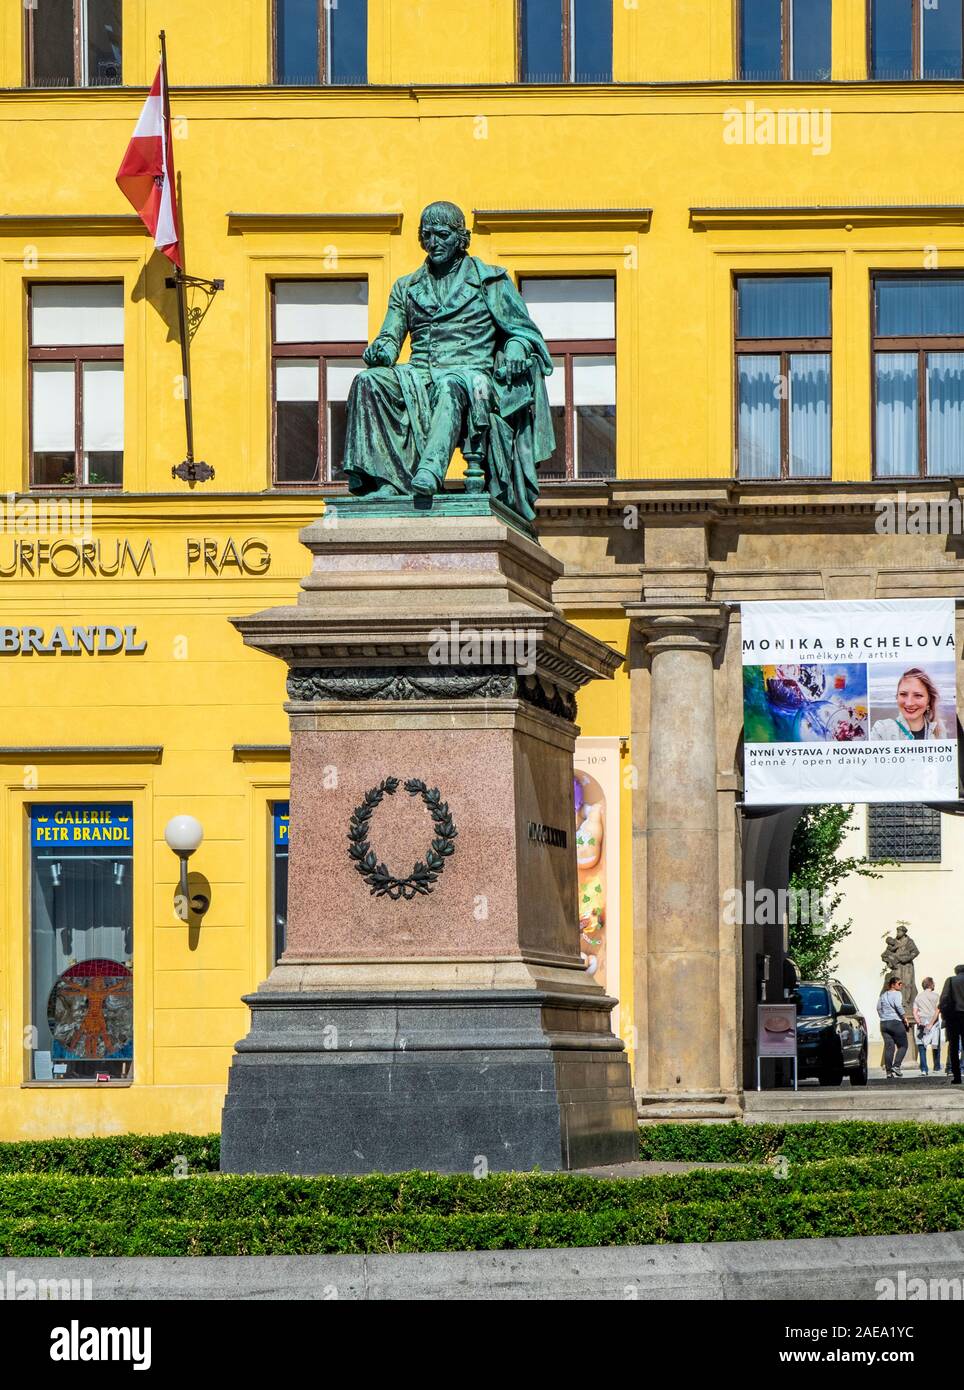 Bronzeskulptur Statue von Josef Jungmann Neustadt Prag Tschechische Republik. Stockfoto